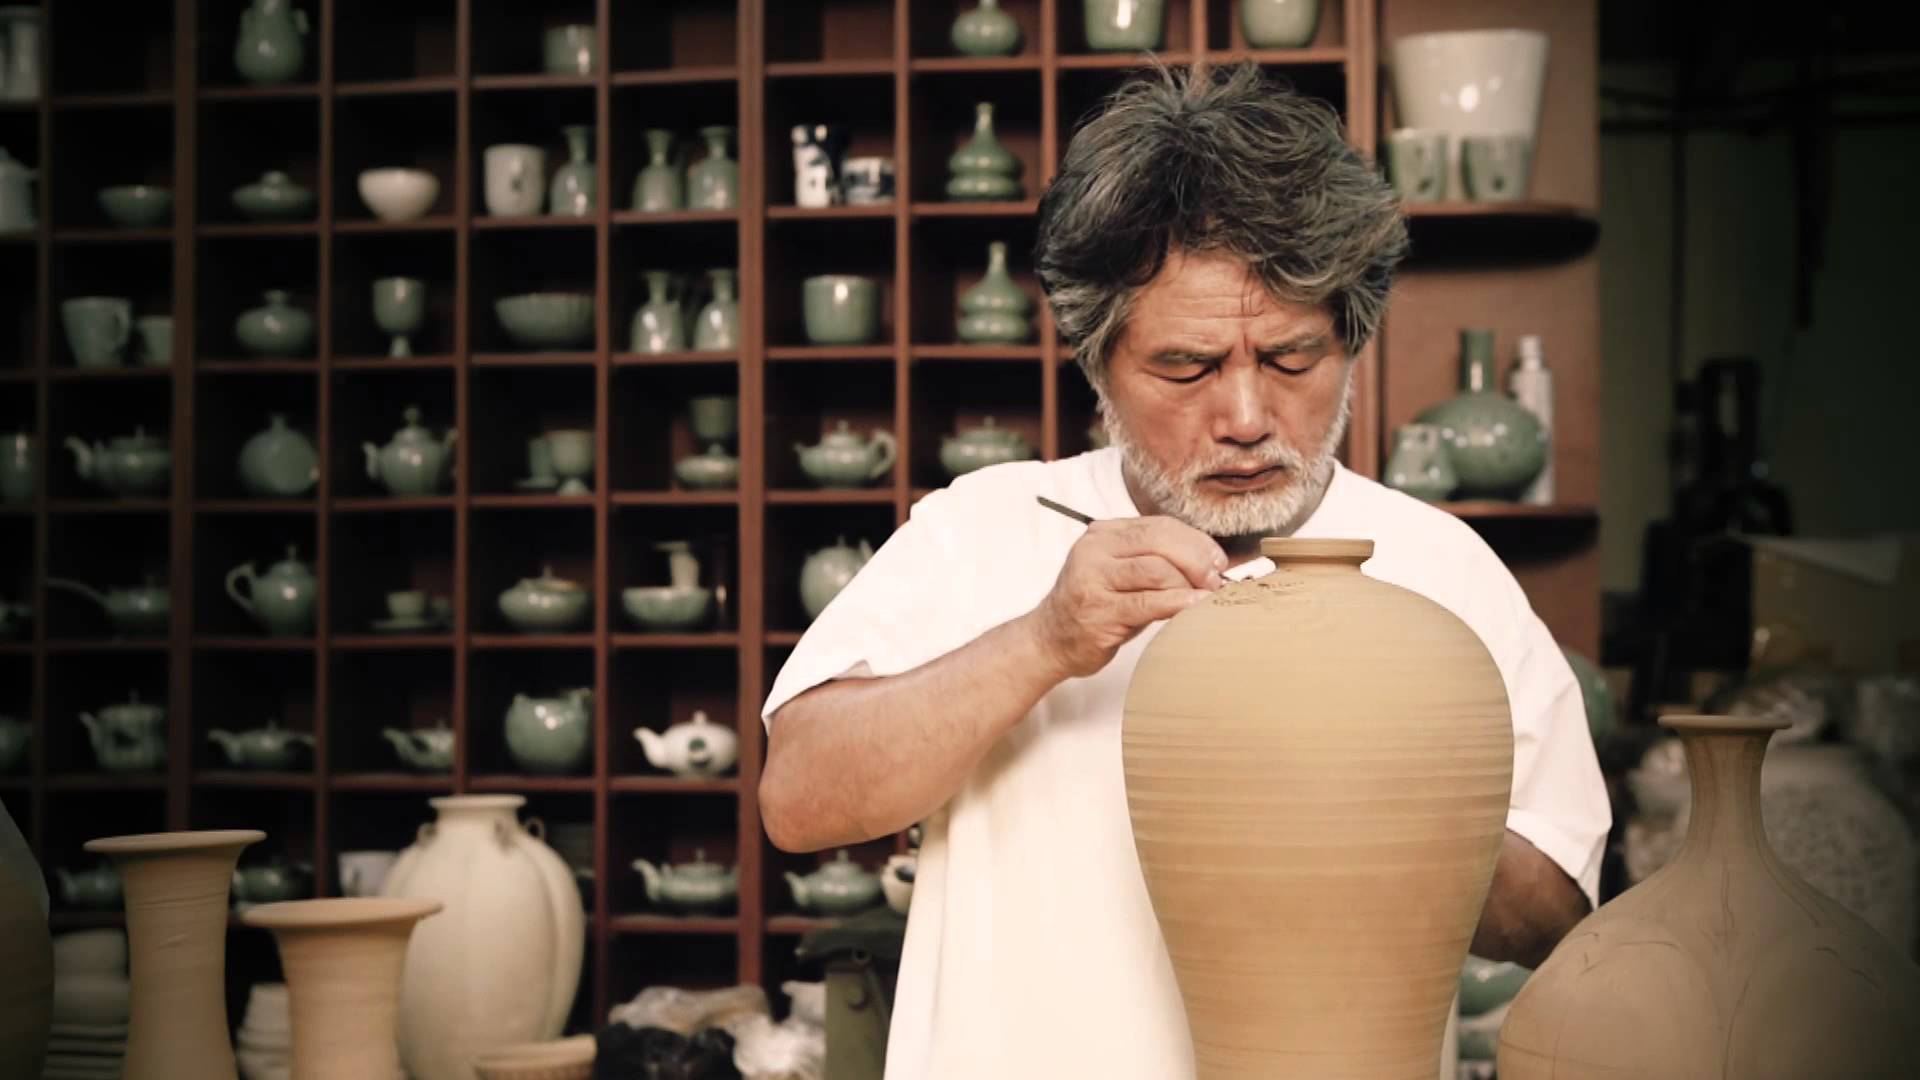 VIDEO – Keramikas guru. (Icheon Master Hand)